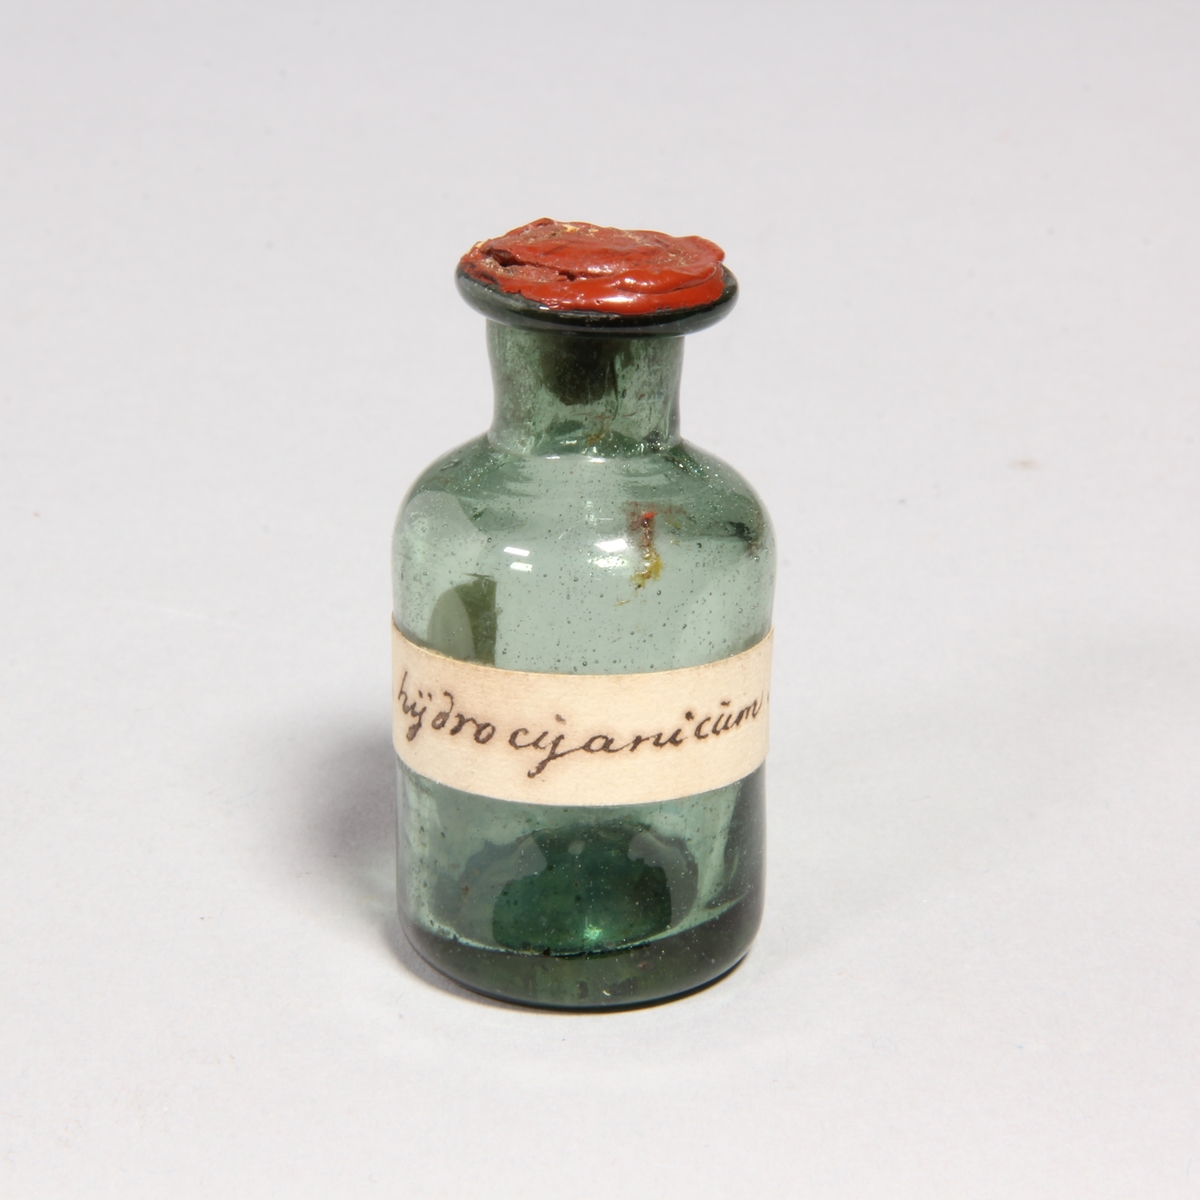 Flaskor, 10 st, av grönt glas med proppar av kork förseglade med rött lack. Står i pappask med lock klädd med marmorerat papper. Flaskorna innehåller rester av cyanid.